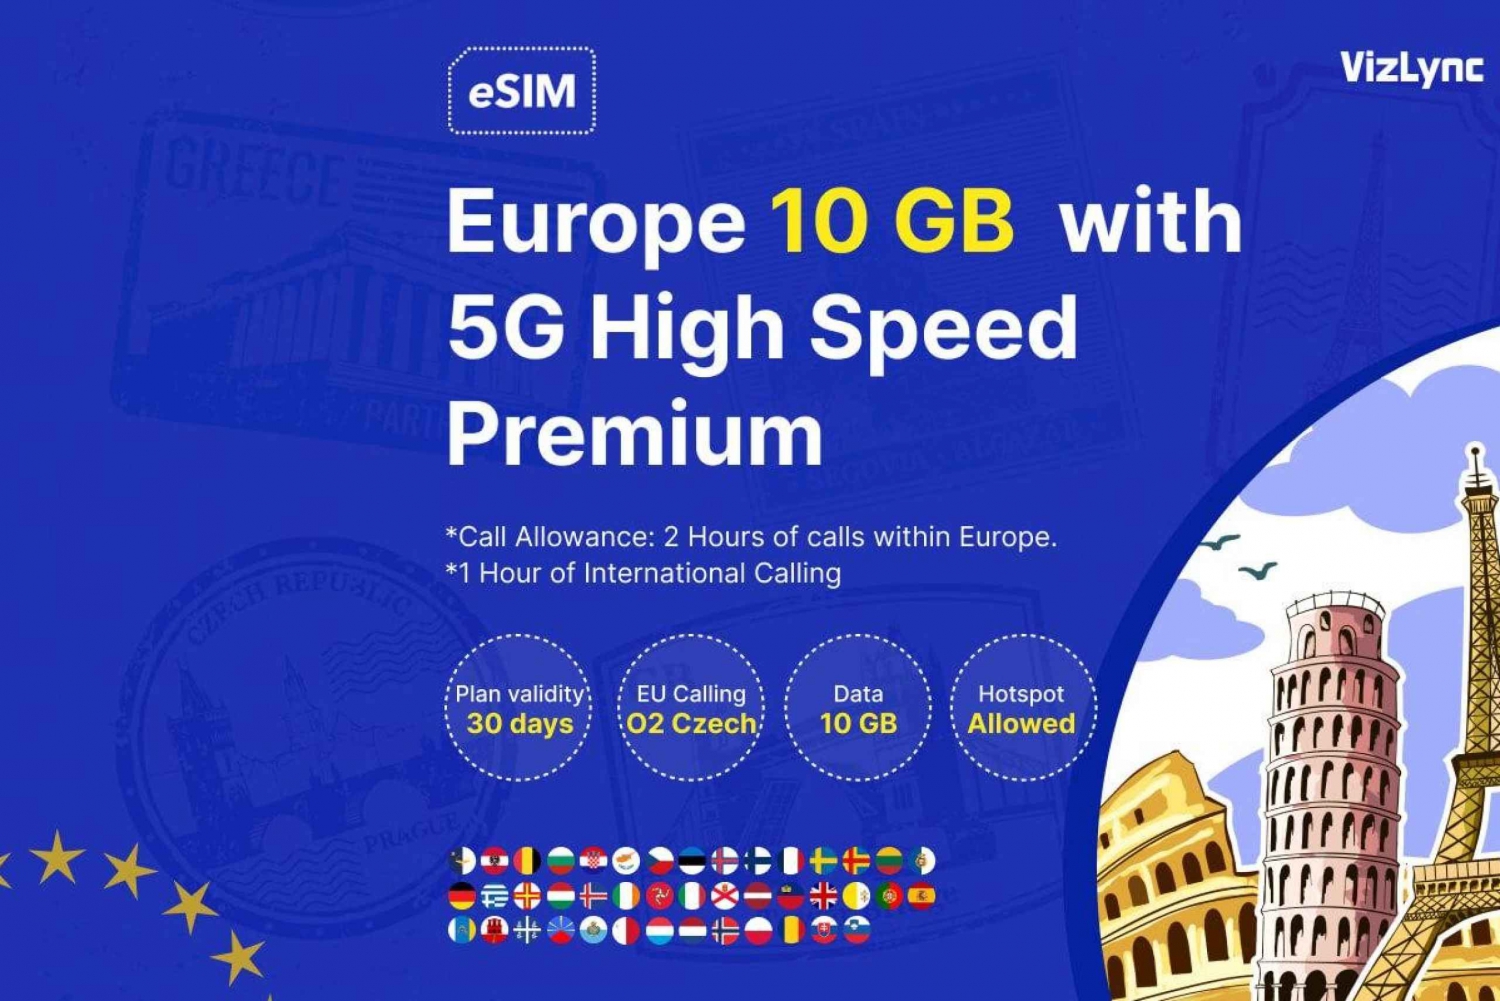 Odkrywaj Europę dzięki planowi szybkiej transmisji danych Premium eSIM 10 GB